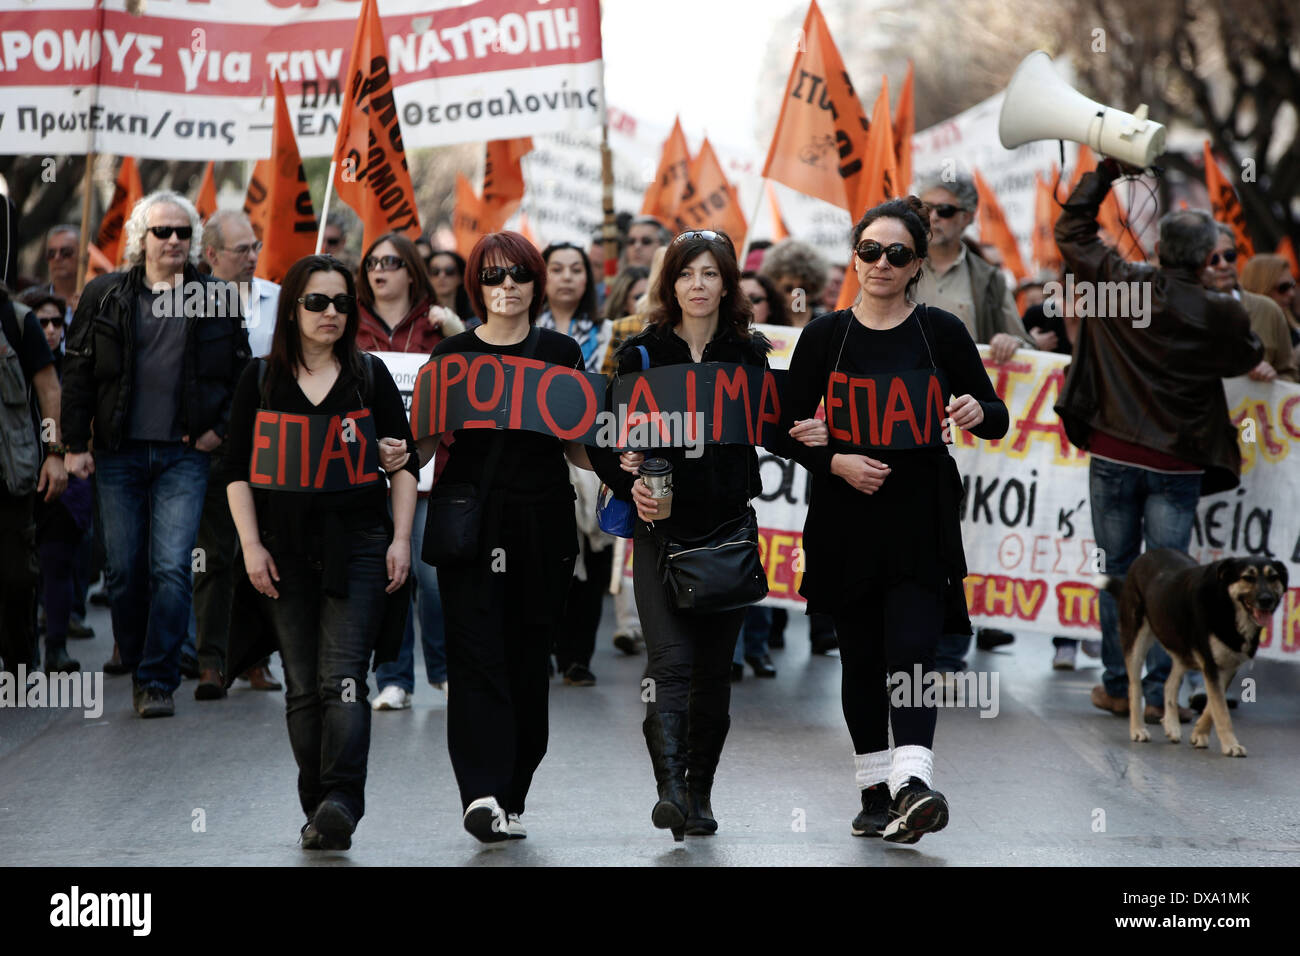 Thessaloniki, Griechenland. 21. März 2014. Lehrer und Schule Wachen protestieren die Verfügbarkeit und Entlassungen im öffentlichen Sektor unter Schulden verstrickt Landes internationale Rettungsaktion Verpflichtung auferlegt. Die Demonstranten protestierten vor dem Büro des m/s Gkiouleka Kostas, Yannis Ioannidis und Büros der PASOK. Lehrergewerkschaft (OLME) ist im 24-Stunden-Streik aus Protest gegen die drohende Entlassungen von Lehrern, weil morgen Ende der achtmonatigen Verfügbarkeitszeitraum. Thessaloniki, Griechenland am 21. März 2014. Bildnachweis: Konstantinos Tsakalidis/Alamy Live-Nachrichten Stockfoto